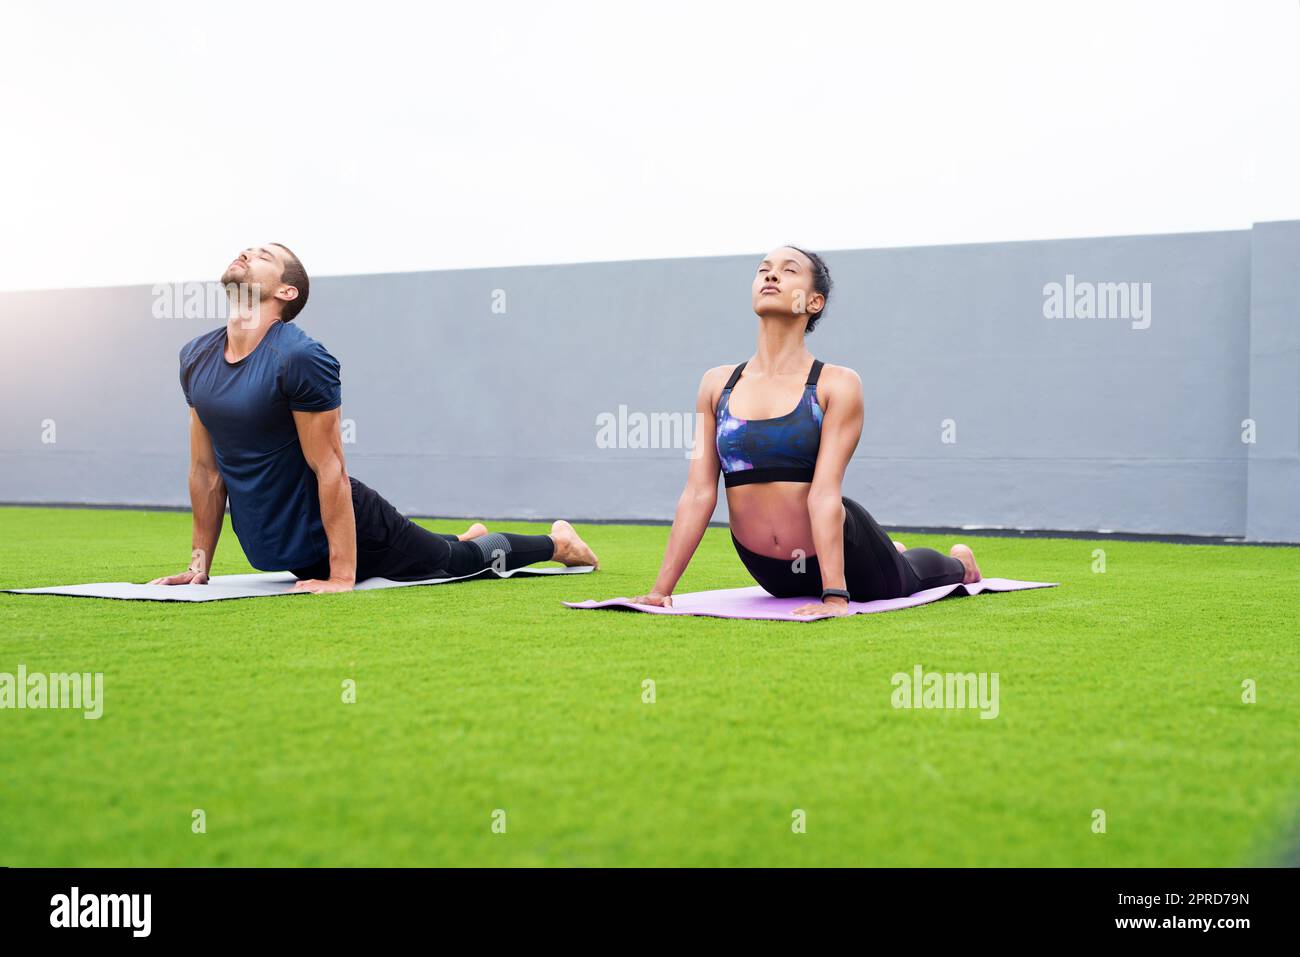 Cancissez le calme dans votre âme. Un jeune homme et une jeune femme pratiquant le yoga ensemble à l'extérieur. Banque D'Images